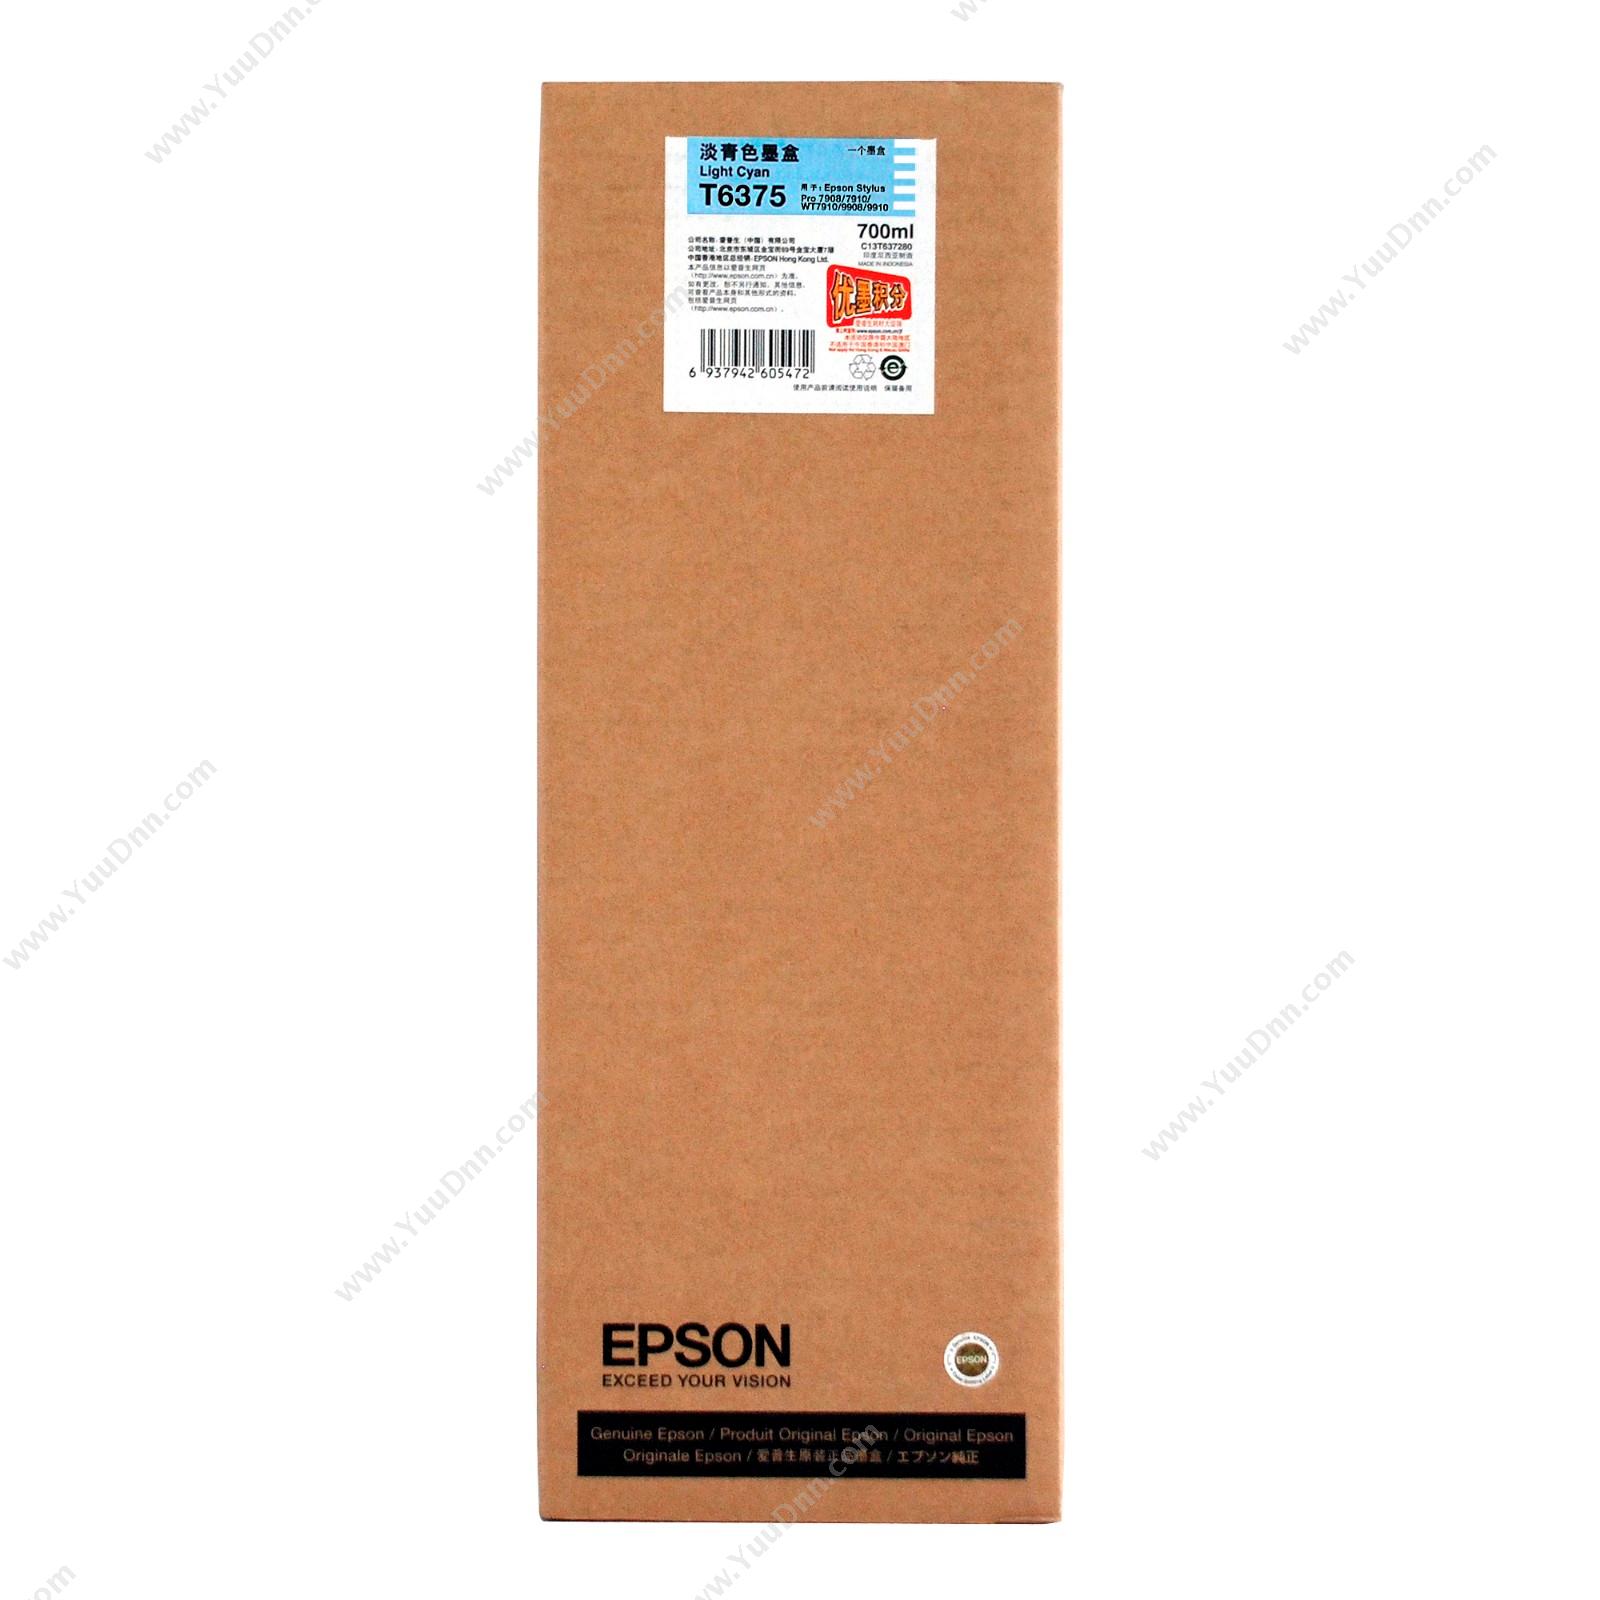 爱普生 EpsonPro9910浅青墨700ml（C13T637580）墨盒